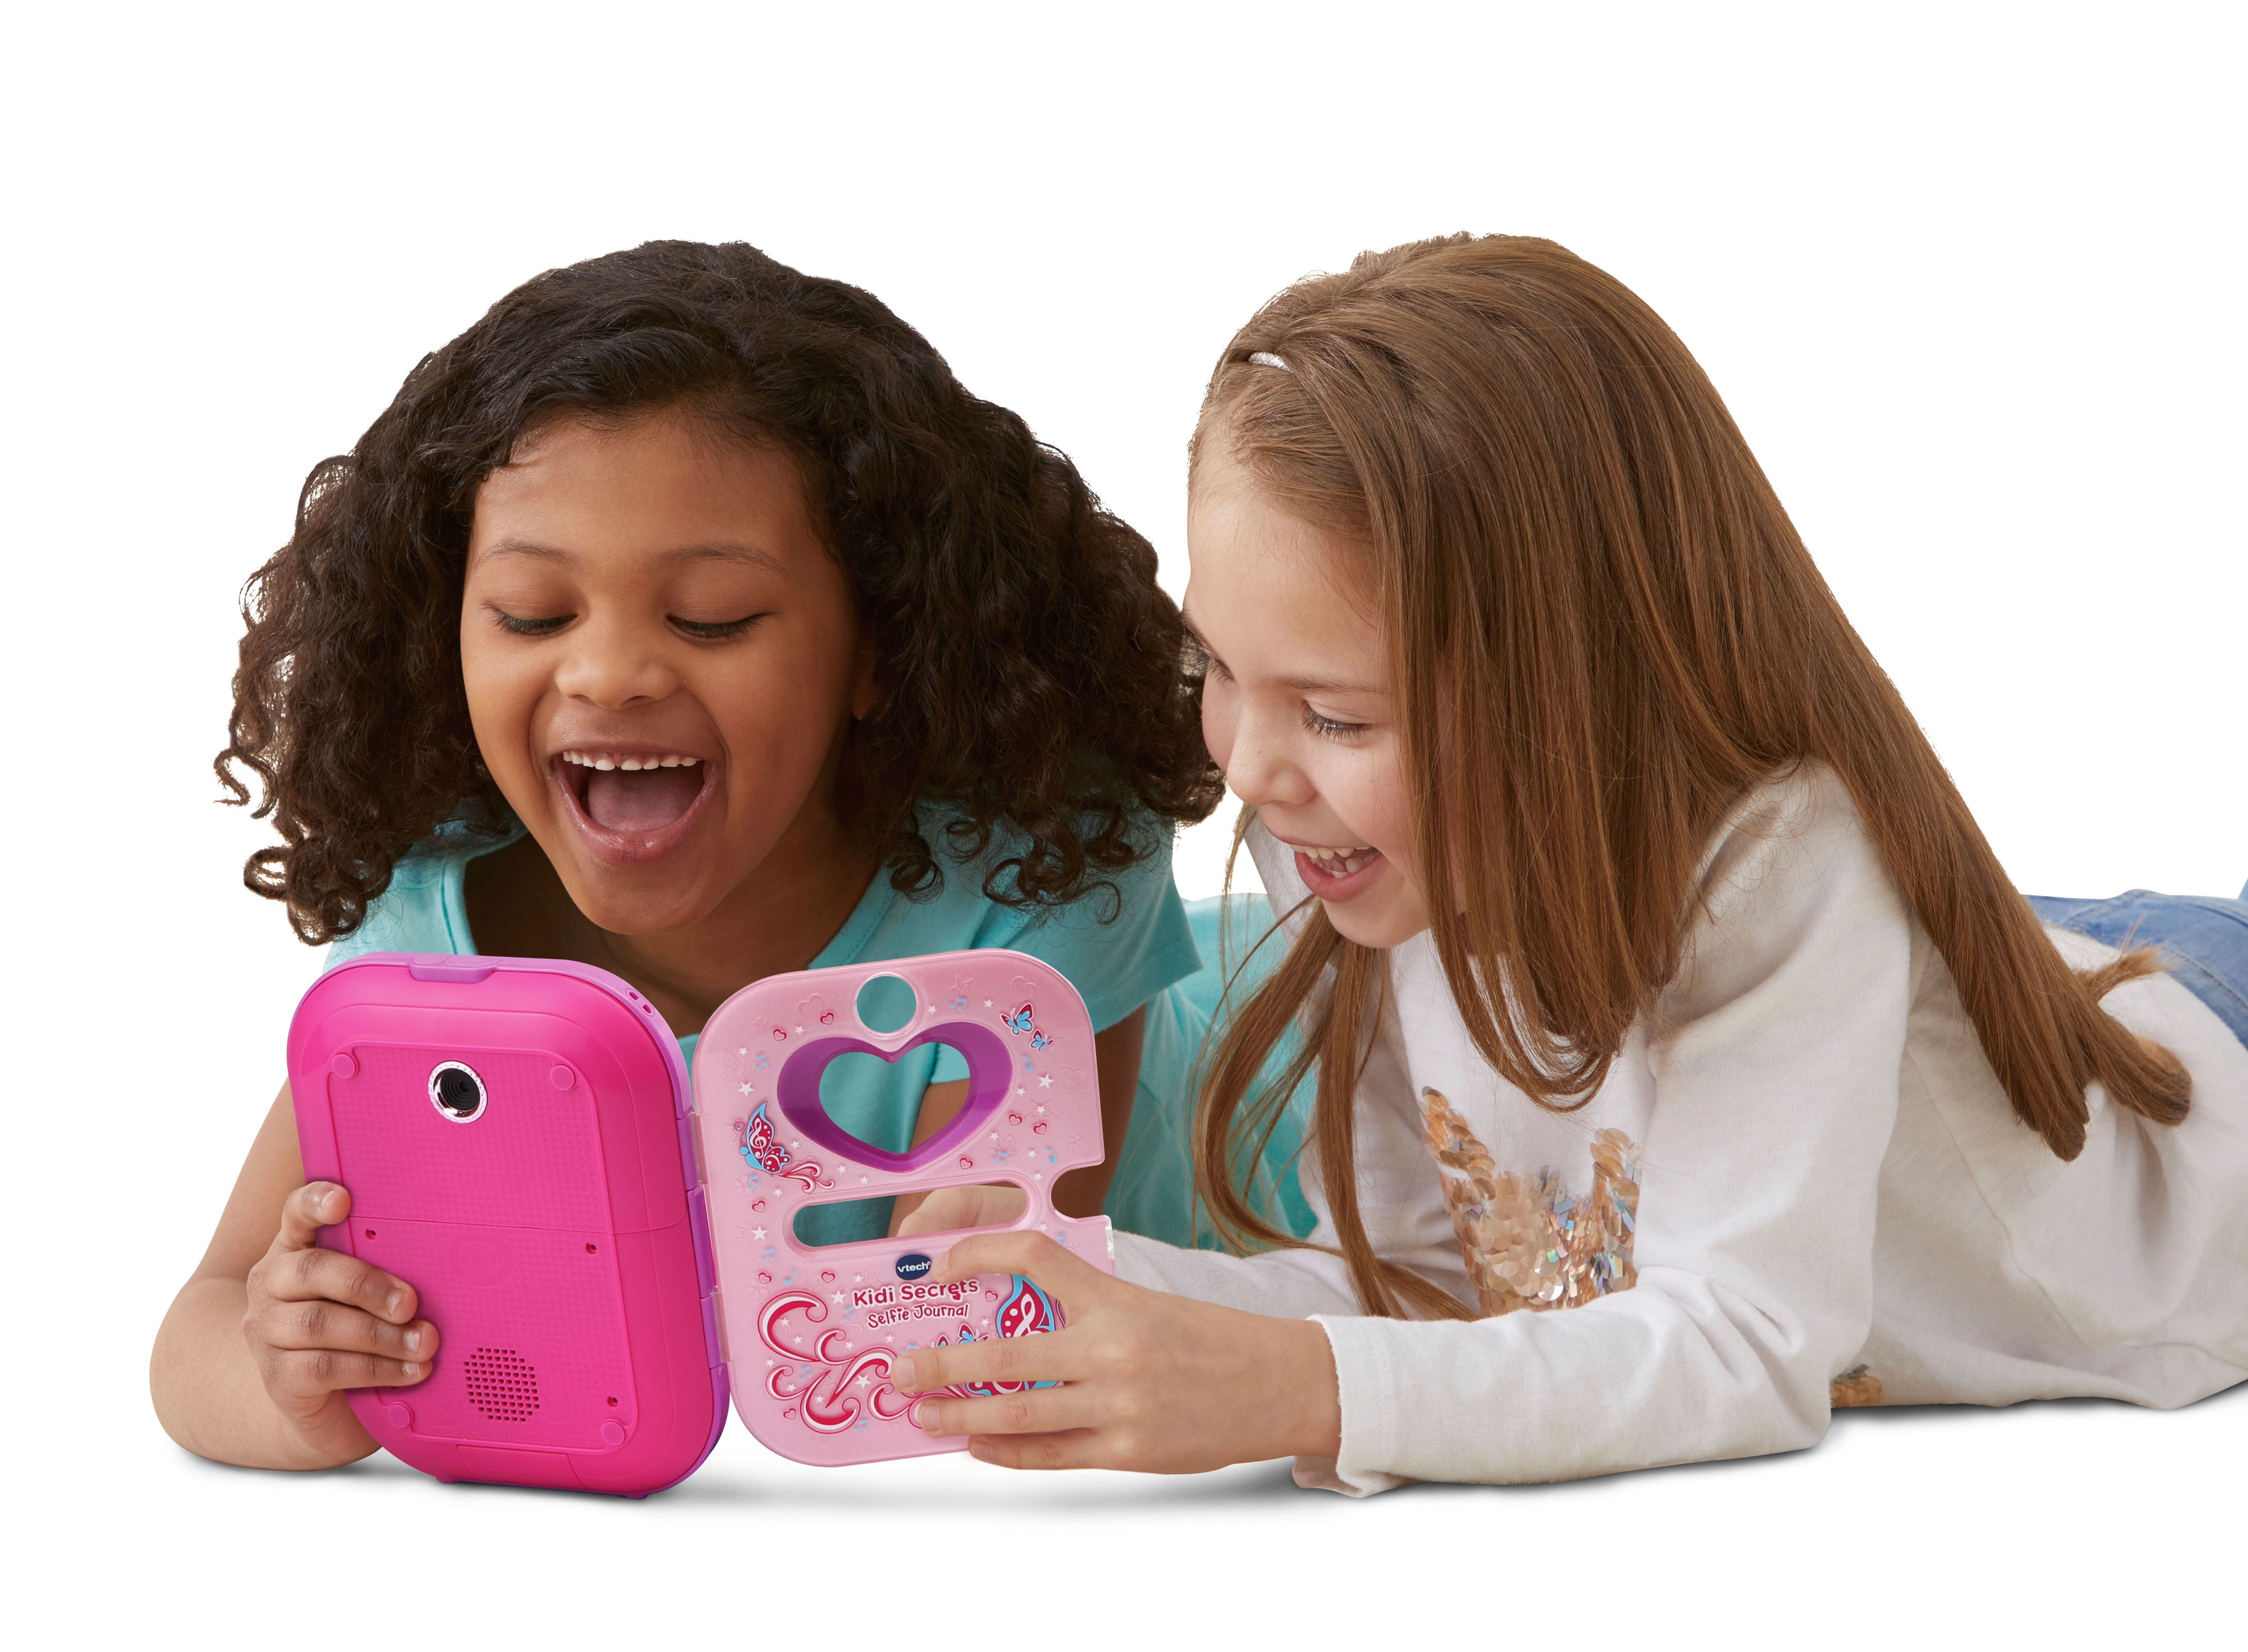 Kidi Secrets Selfie Journal™, Preschool Learning